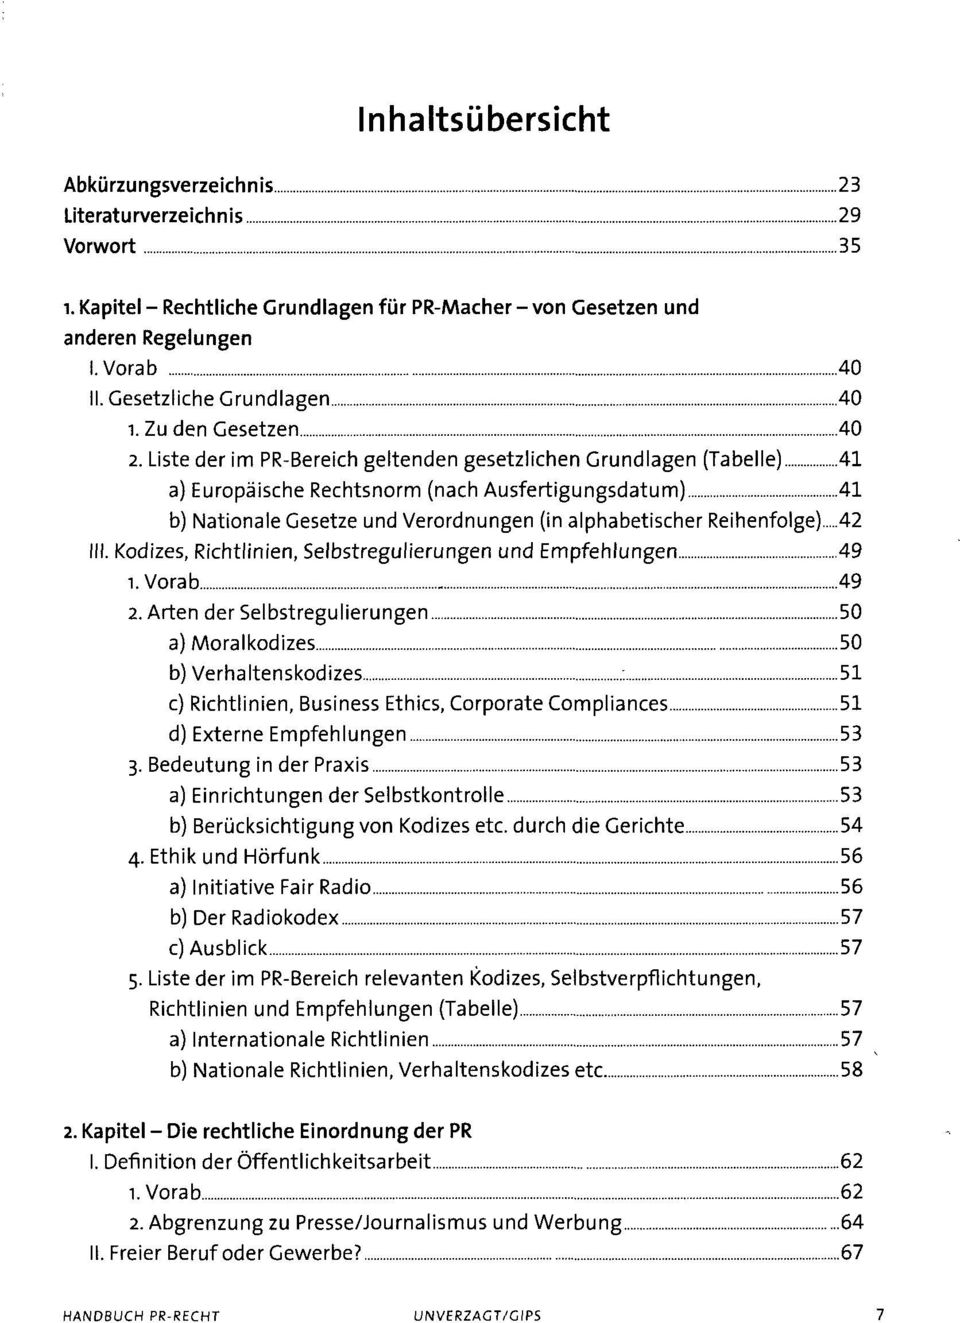 Liste der im PR-Bereich geltenden gesetzlichen Grundlagen (Tabelle) 41 a) Europäische Rechtsnorm (nach Ausfertigungsdatum) 41 b) Nationale Gesetze und Verordnungen (in alphabetischer Reihenfolge) 42